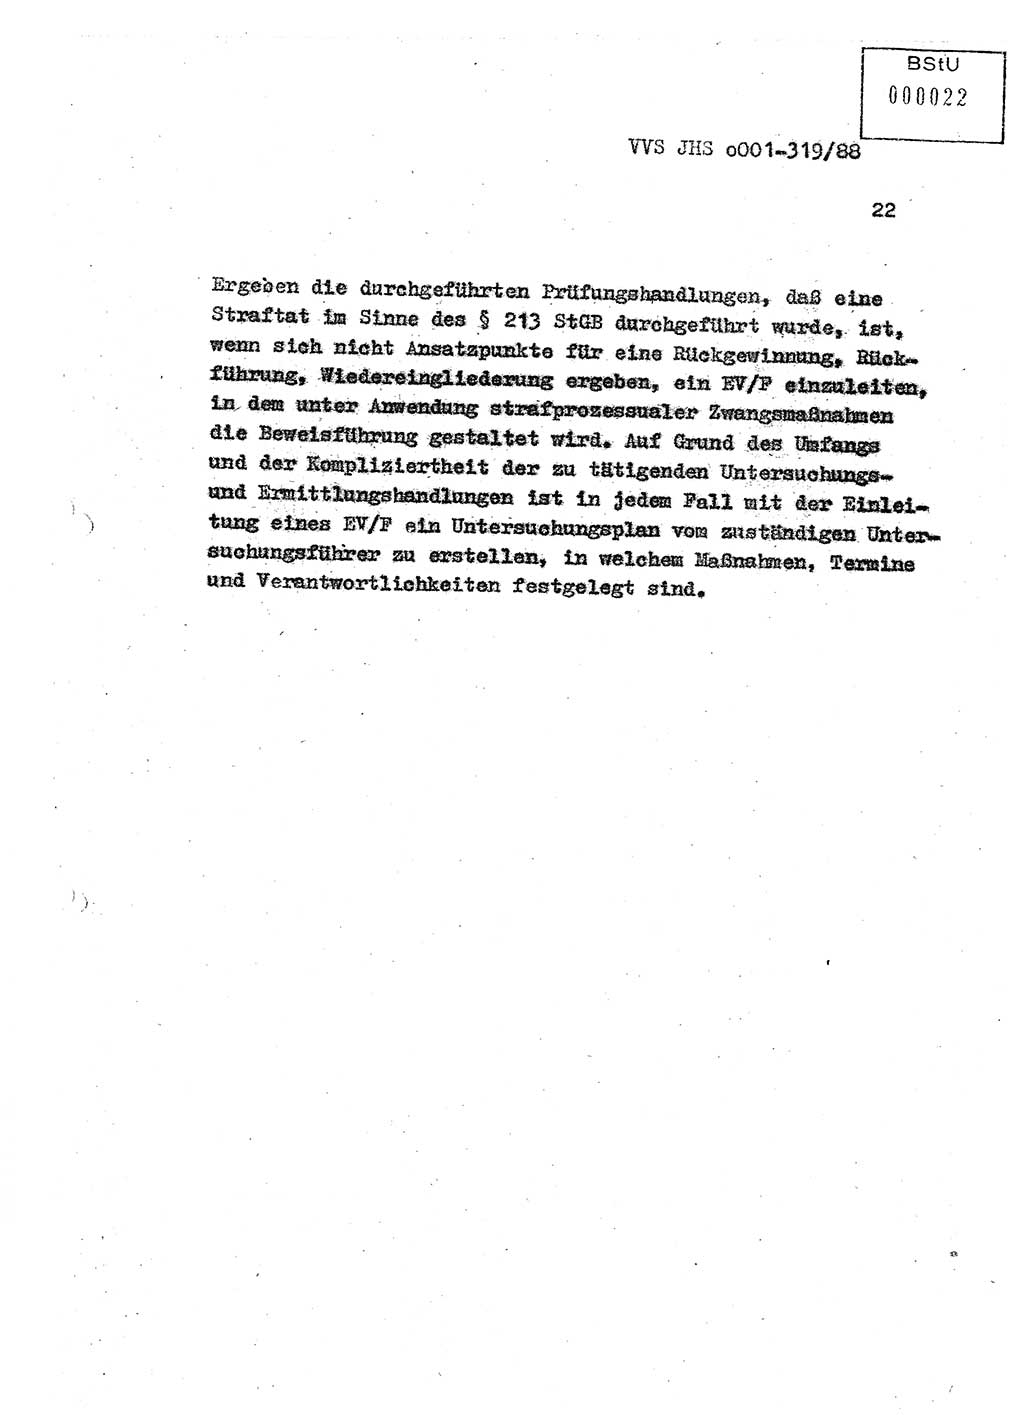 Diplomarbeit Offiziersschüler Holger Zirnstein (HA Ⅸ/9), Ministerium für Staatssicherheit (MfS) [Deutsche Demokratische Republik (DDR)], Juristische Hochschule (JHS), Vertrauliche Verschlußsache (VVS) o001-319/88, Potsdam 1988, Blatt 22 (Dipl.-Arb. MfS DDR JHS VVS o001-319/88 1988, Bl. 22)